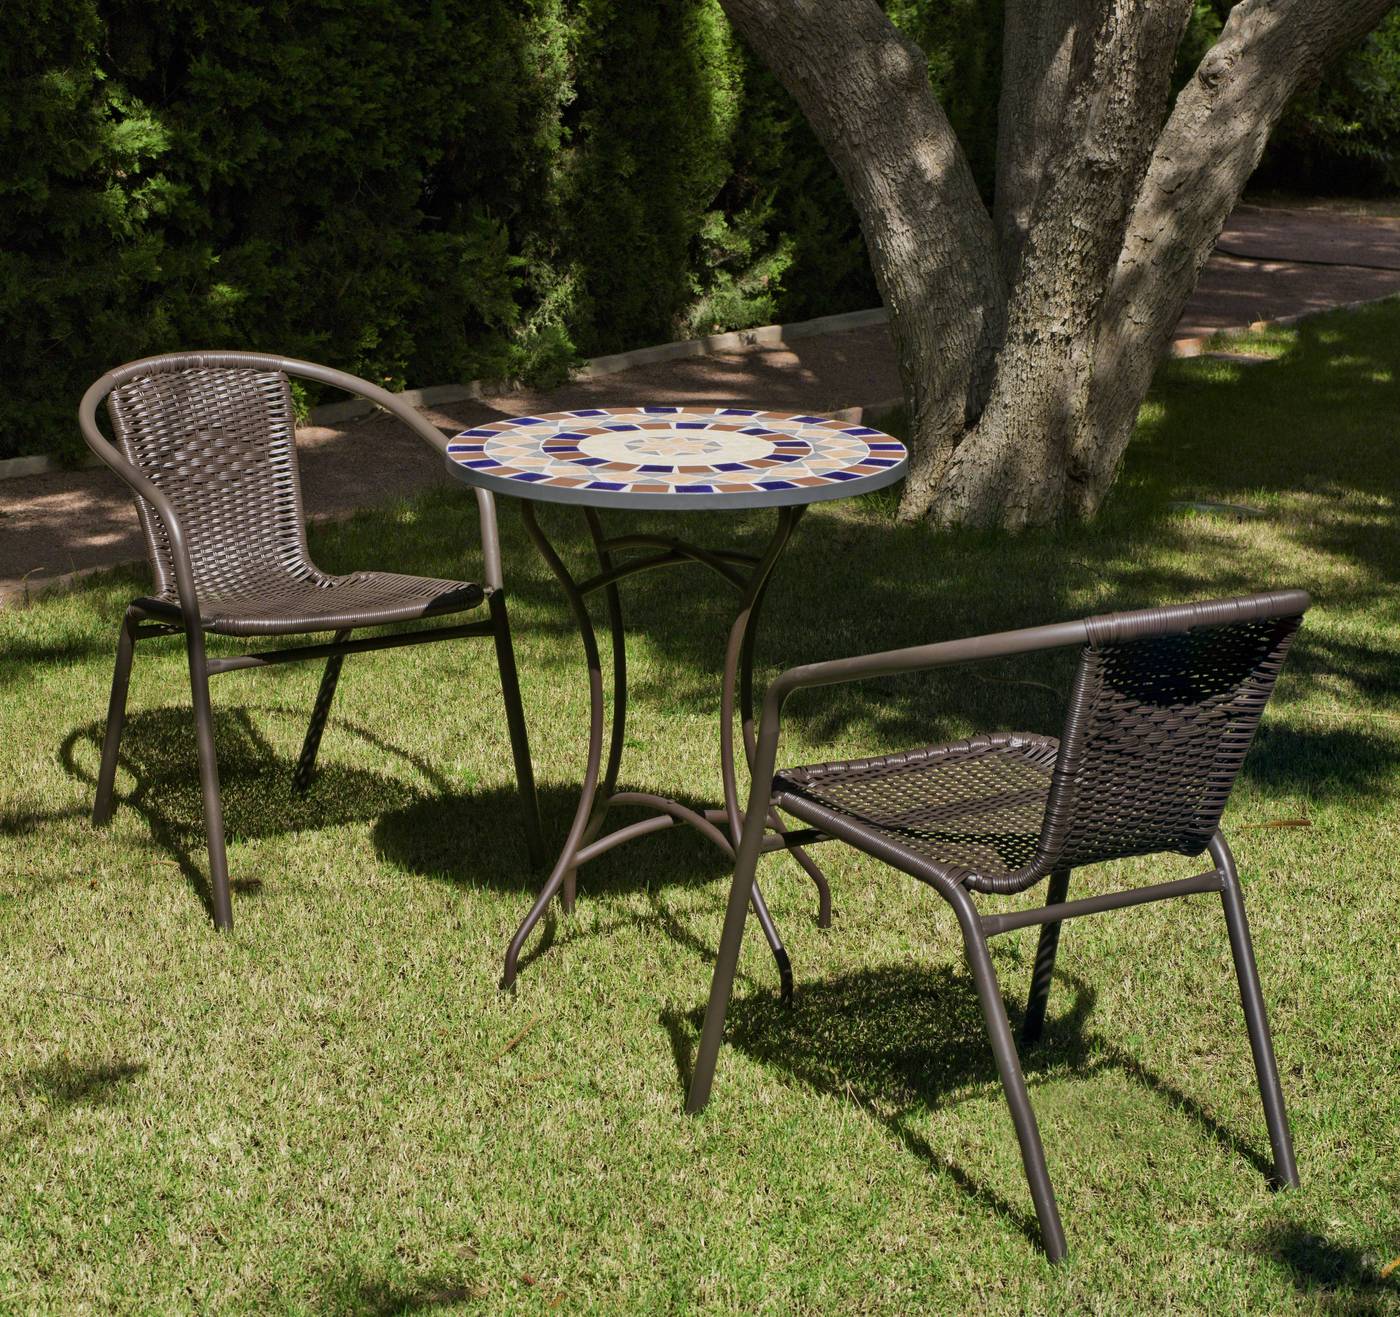 Conjunto de acero color bronce: mesa  redonda de acero forjado, con tablero mosaico de 60 cm. + 2 sillones apilables de wicker